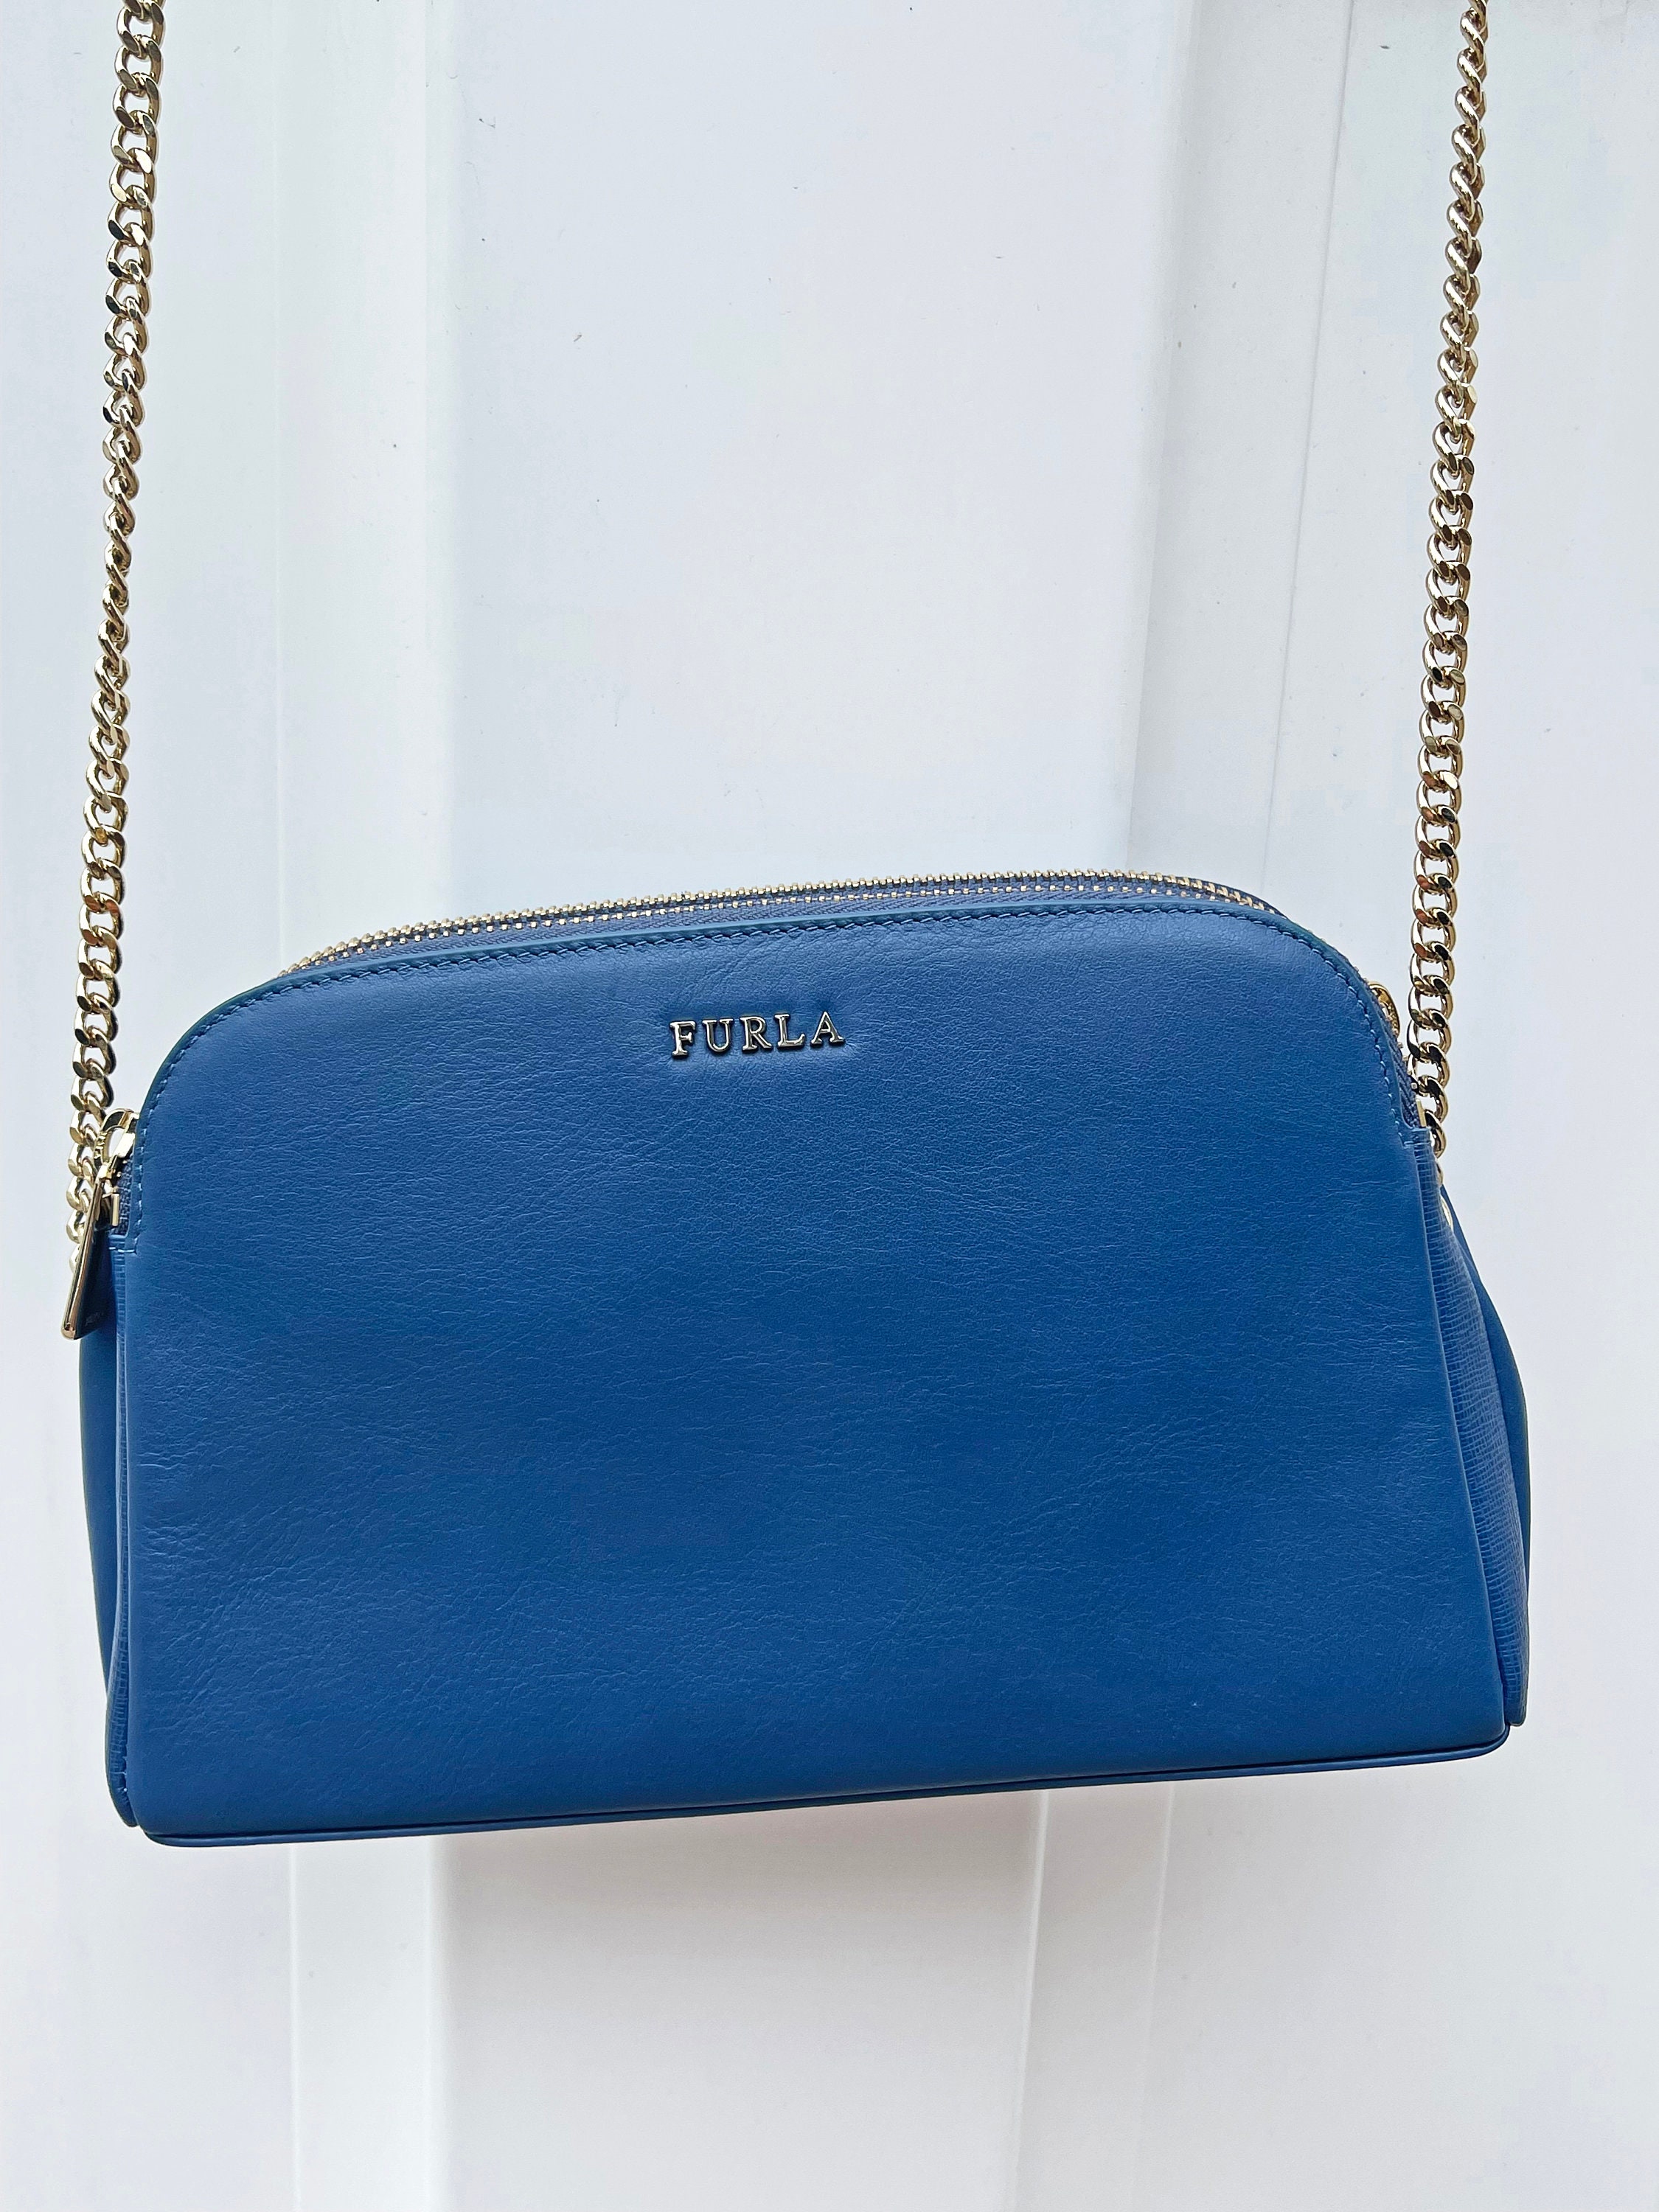 Beperking Bedankt Wiskunde Furla Crossbody Shoulder Handbag Chain Strap Blue Leather - Etsy